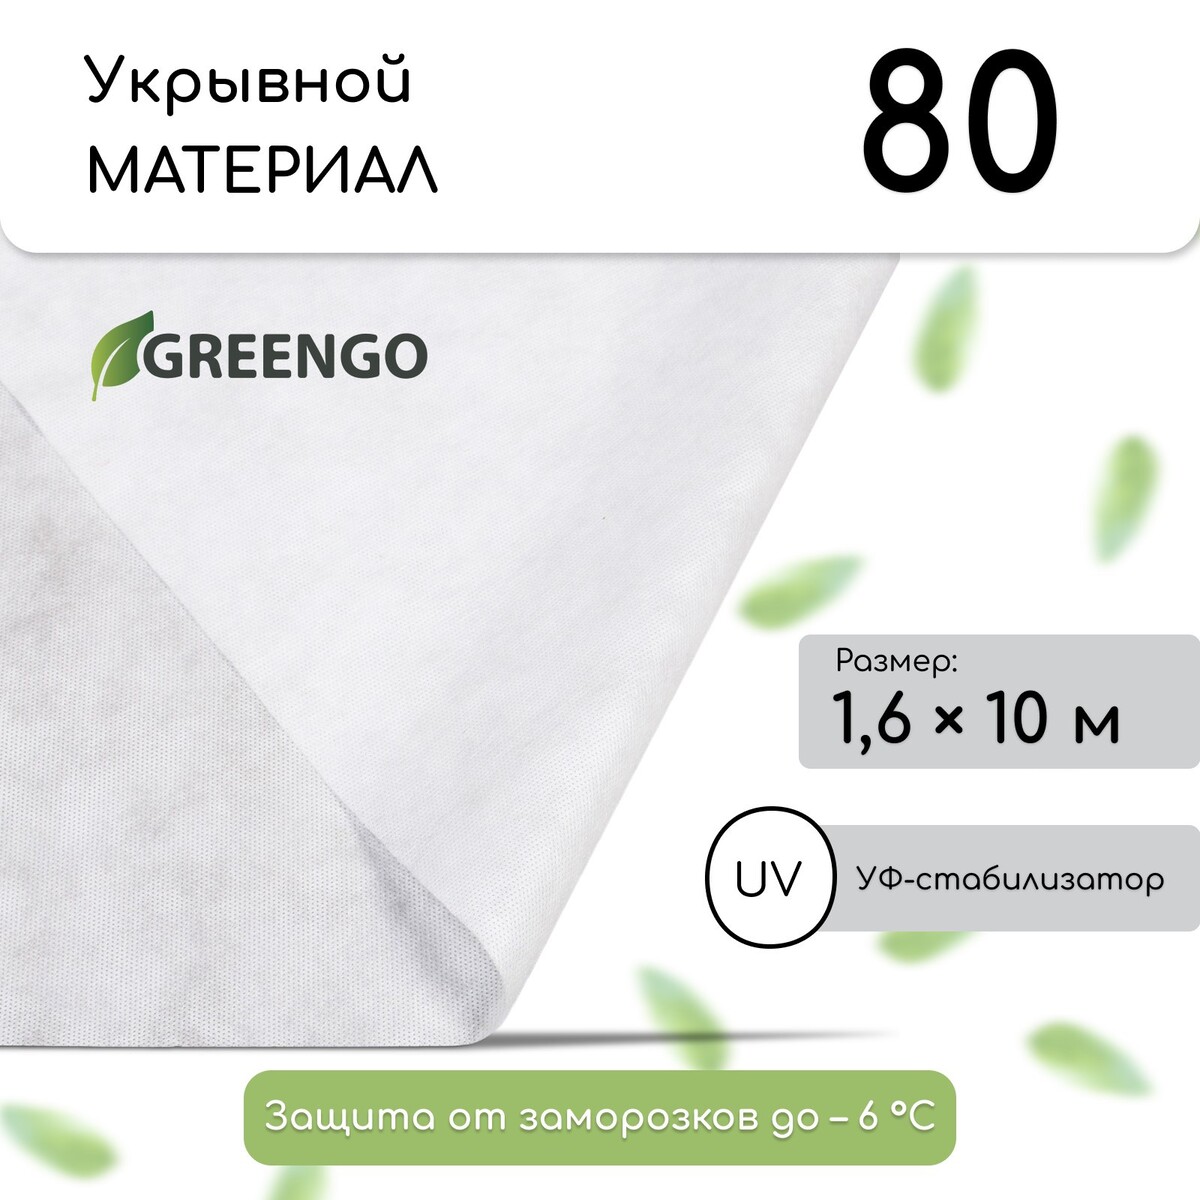 Материал укрывной, 10 × 1,6 м, плотность 80 г/м², спанбонд с уф-стабилизатором, белый, greengo, эконом 30%